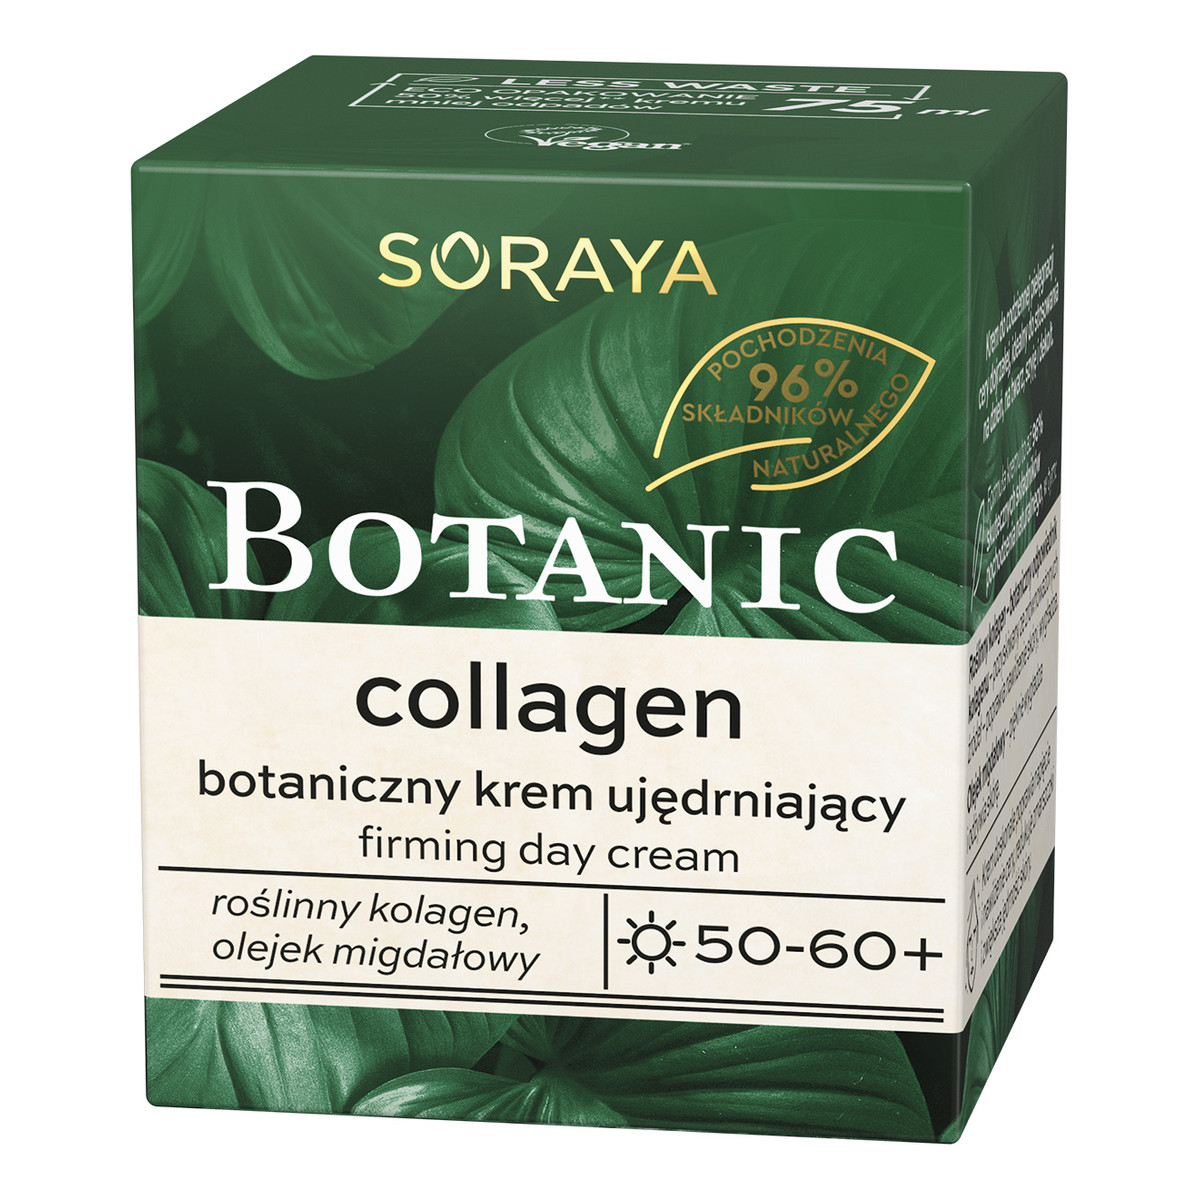 Soraya Botanic Collagen Botaniczny Krem ujędrniający 50-60+ na dzień 75ml